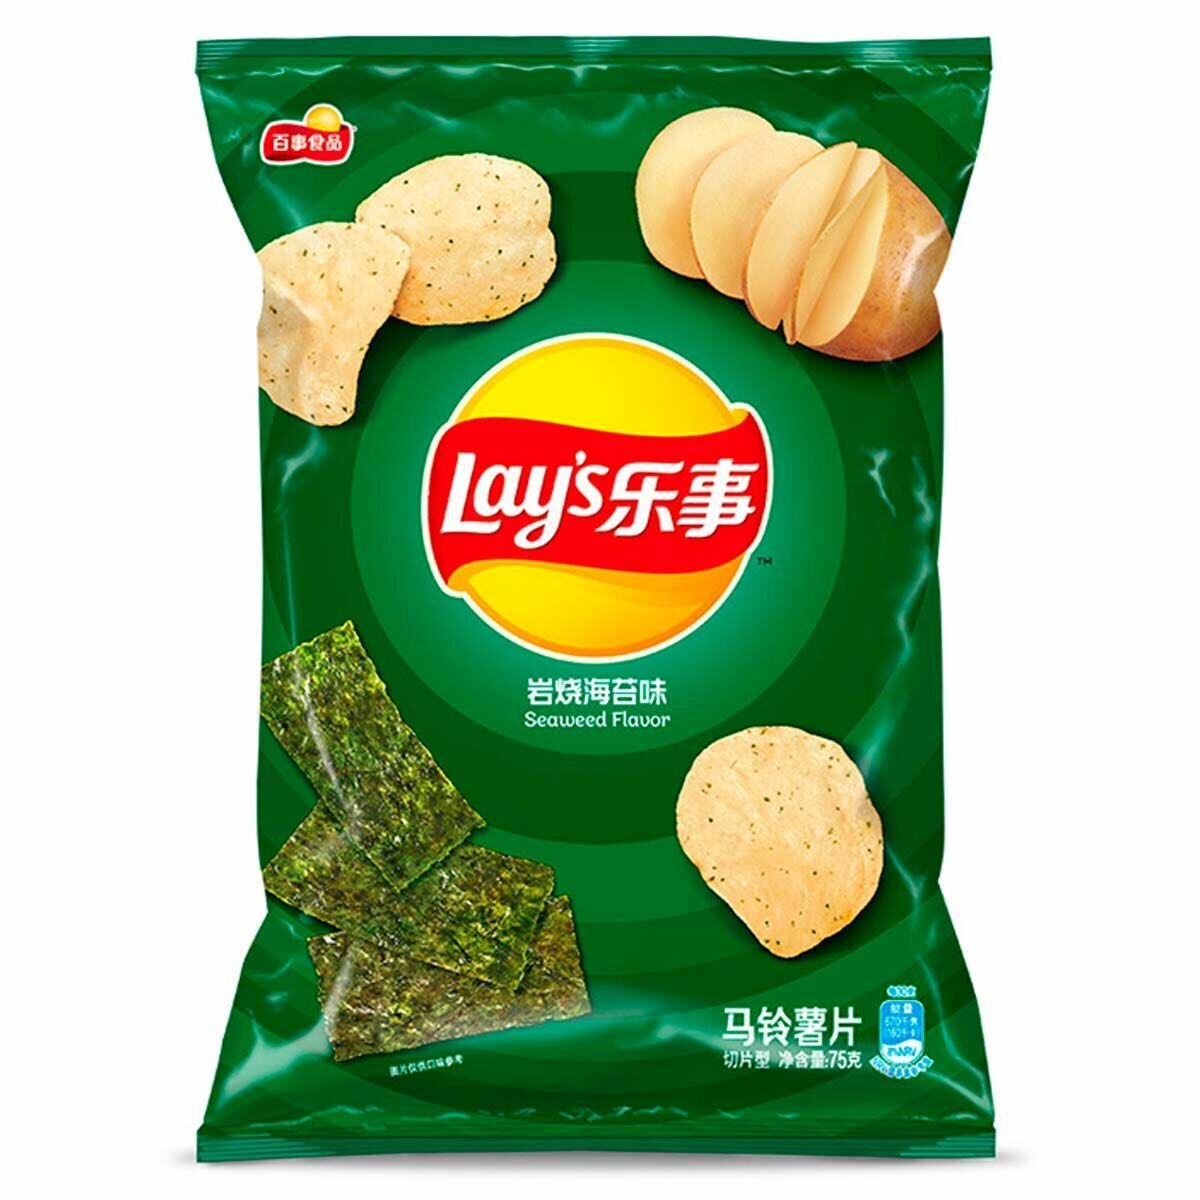 Картофельные чипсы Lay's Seaweed Flavor со вкусом морских водорослей нори (Китай), 70 г